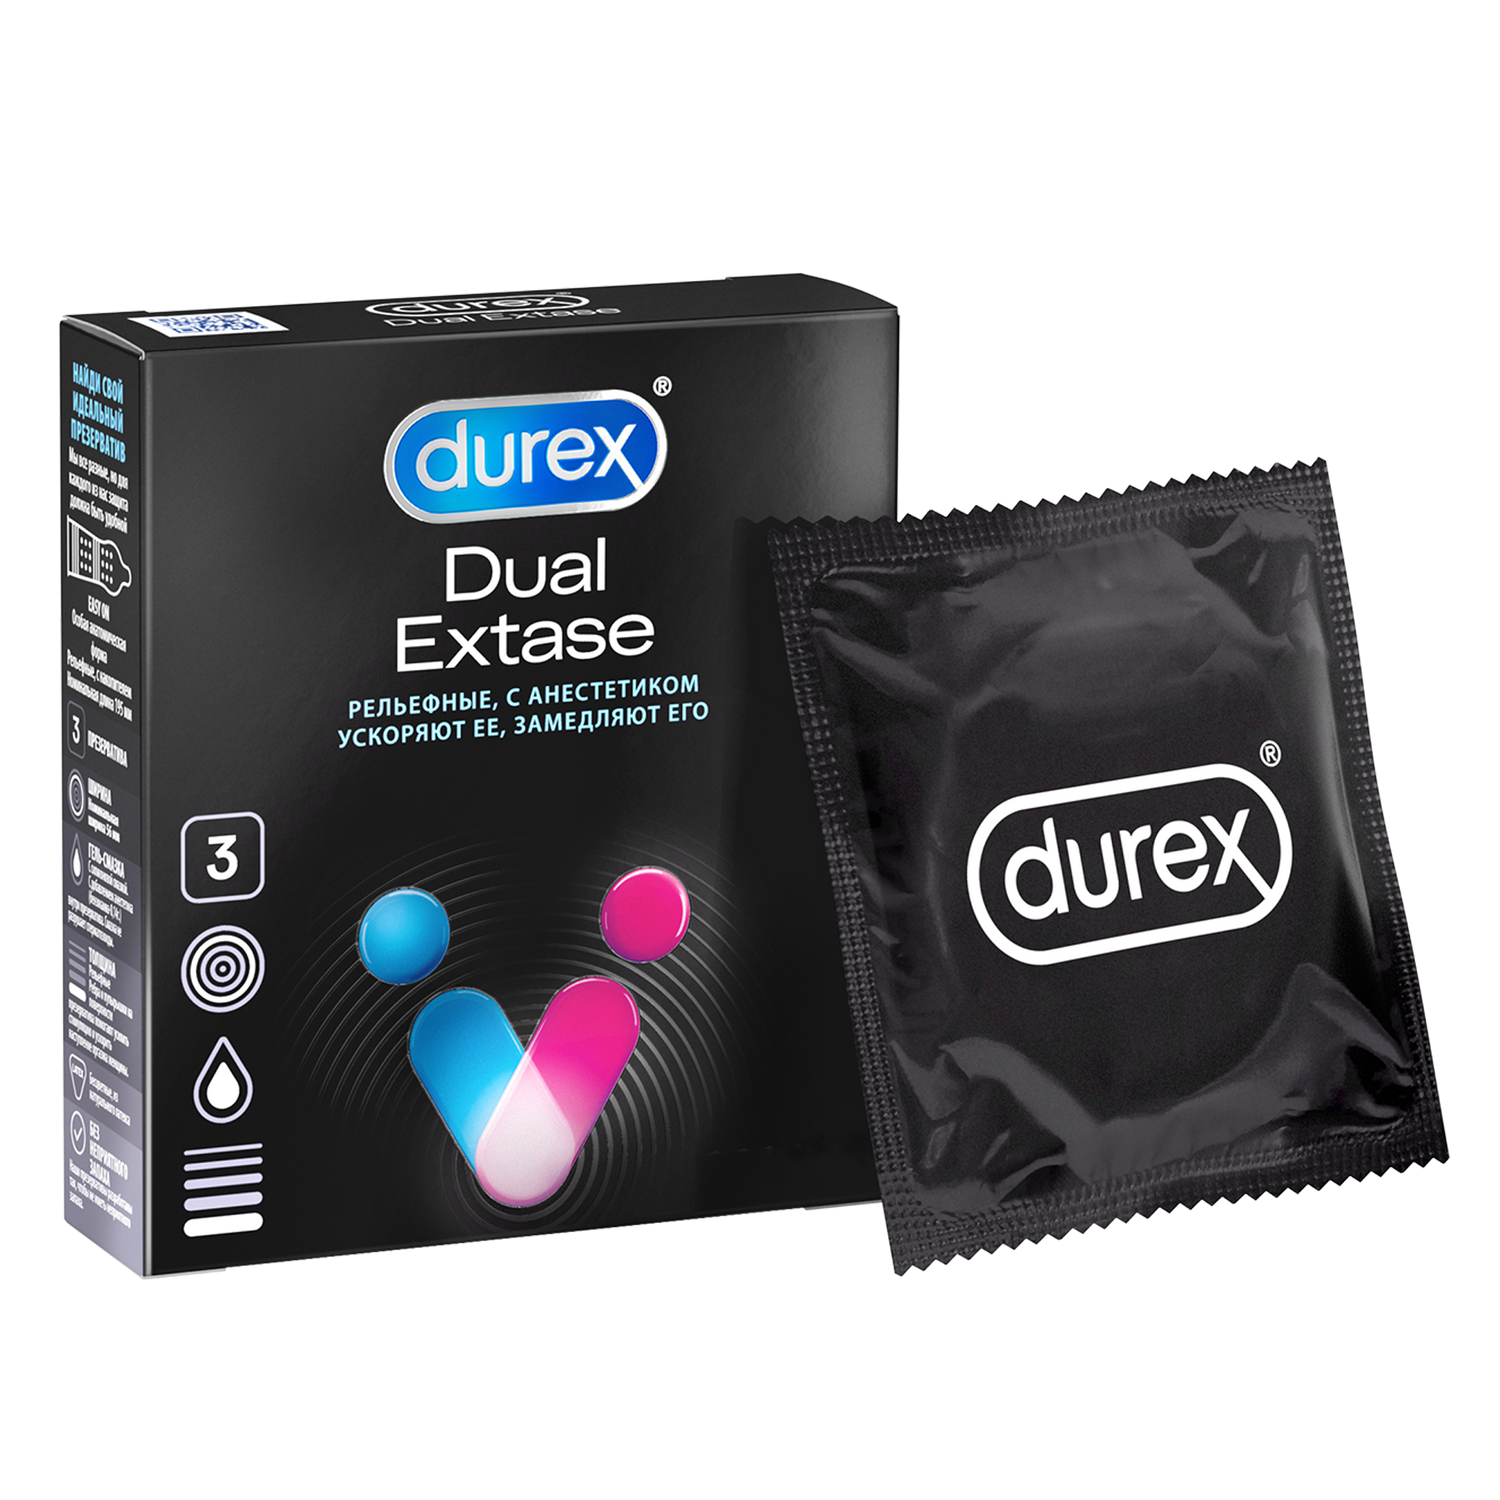 Презервативы Durex Dual Extase, рельефные с анестетиком, 3 шт. презервативы durex dual extase рельефные с анестетиком 12 шт